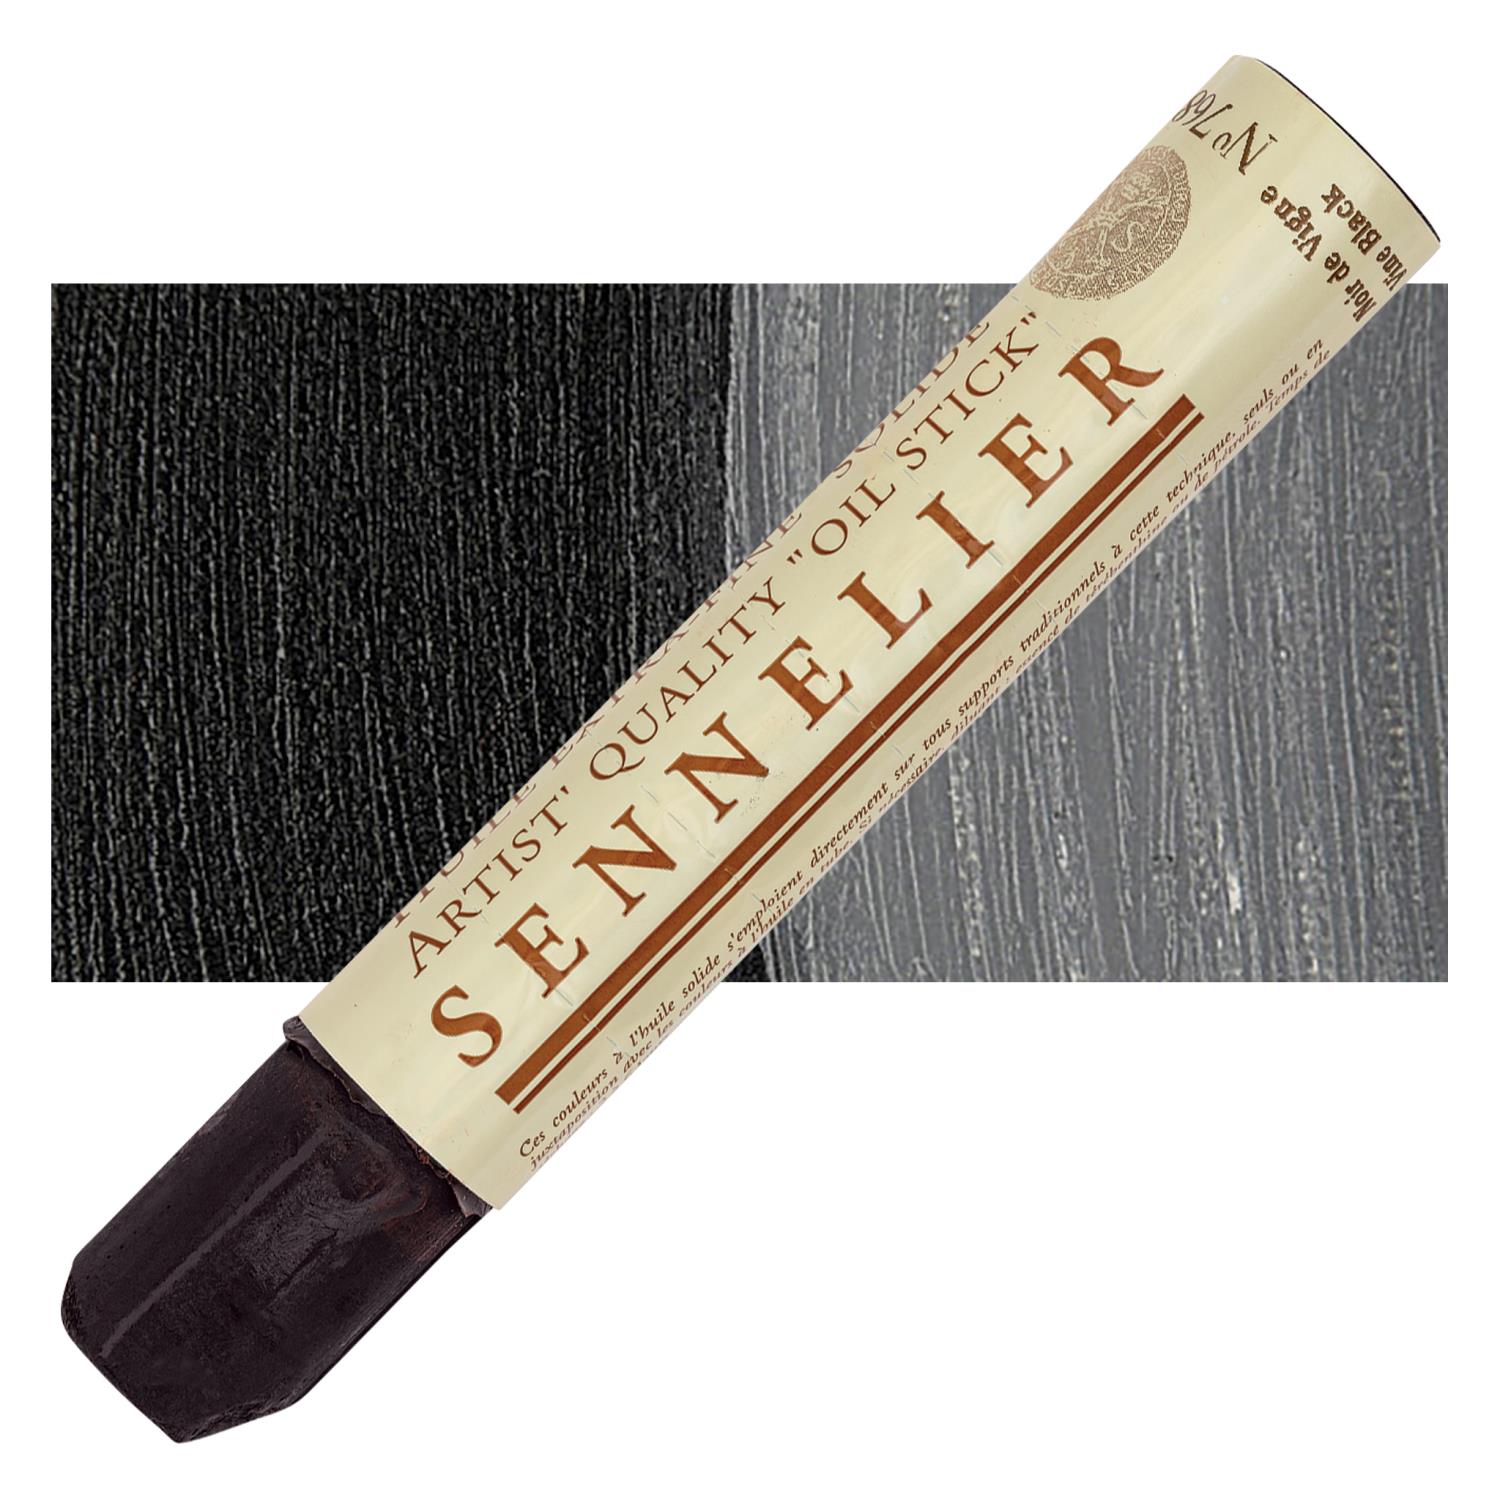 Sennelier Artist Oil Stick 38ml - 768 Vine Black S1 utgår